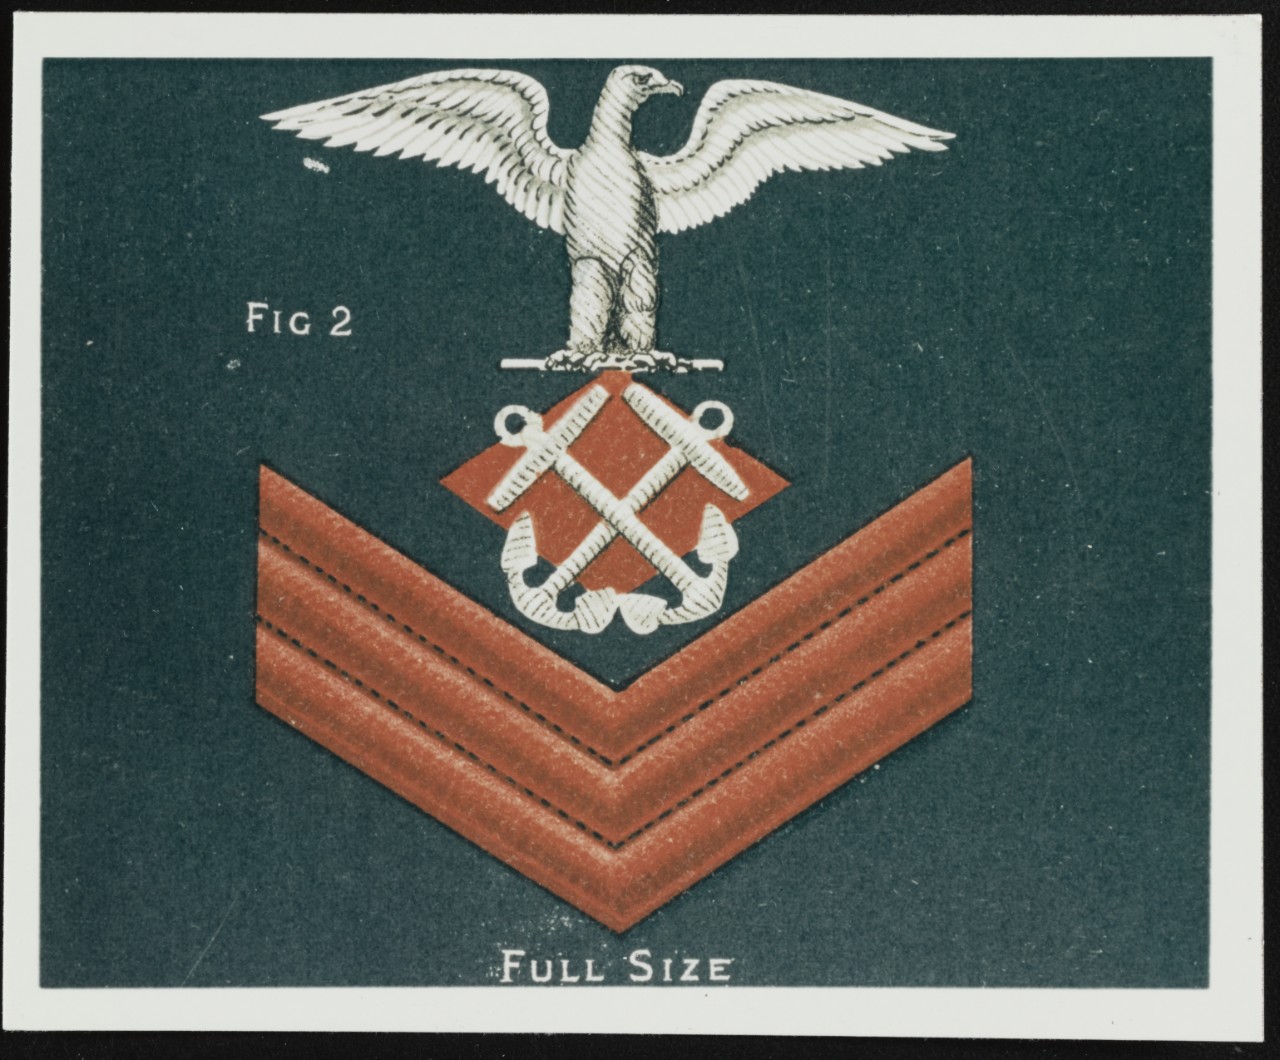 Chevron of Petty Officer First Class, U.S. Navy Uniform Regulations, 1886